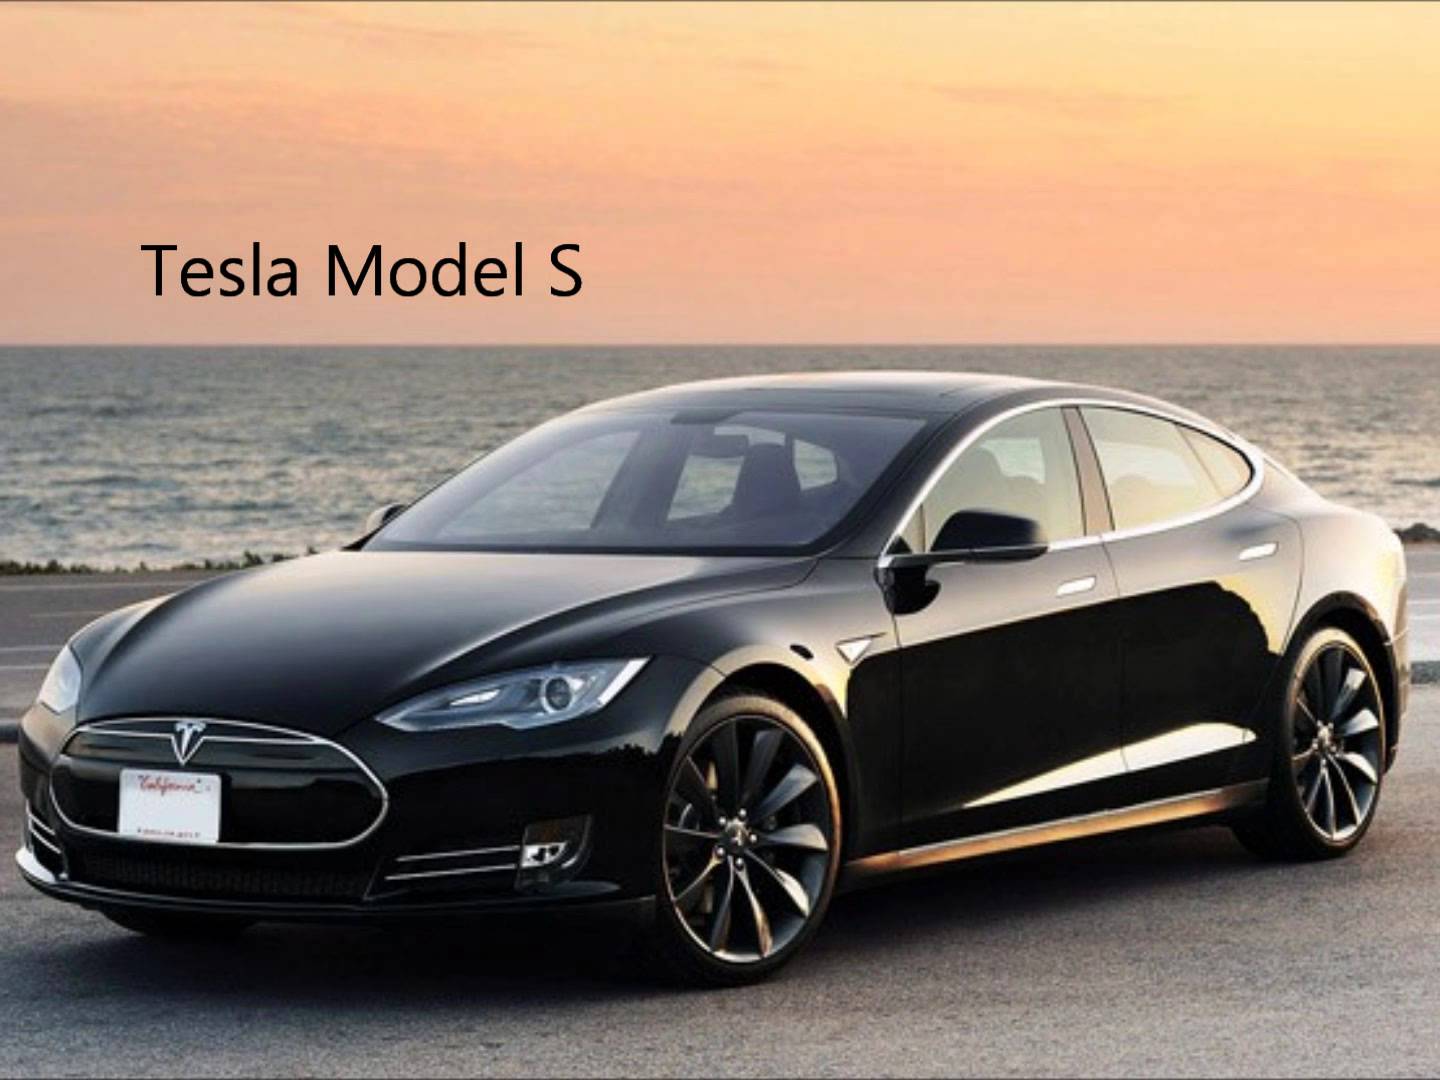 Tesla shows how to drive an autonomous vehicle